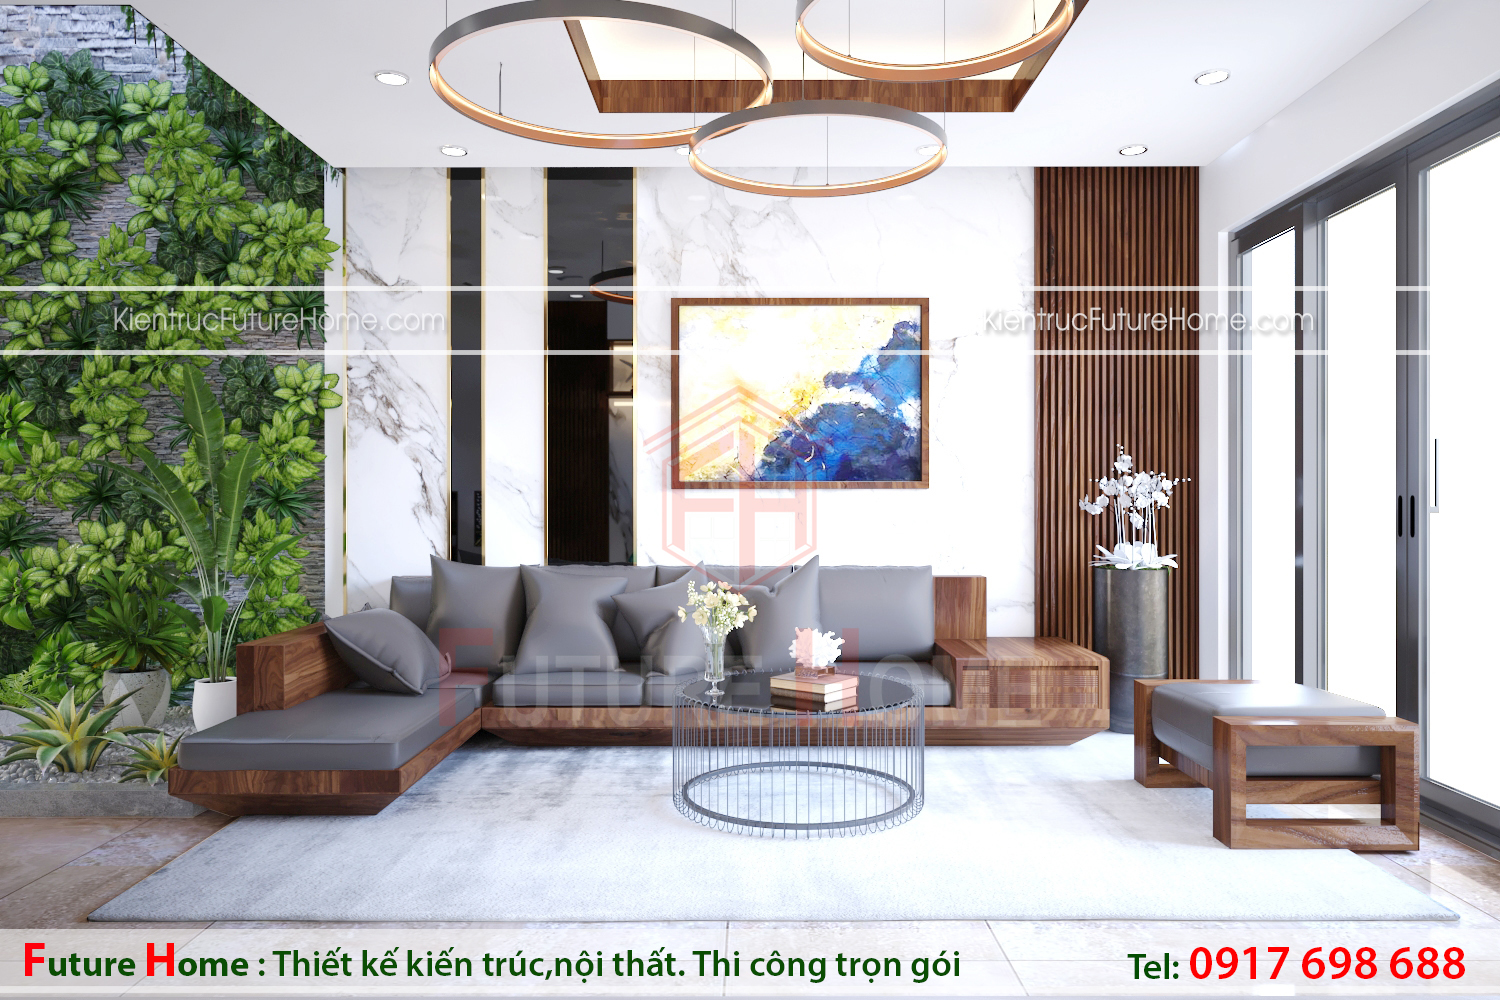 Thiết kế nội thất với hình khối đơn giản, tạo vẻ đẹp hiện đại cho phòng khách